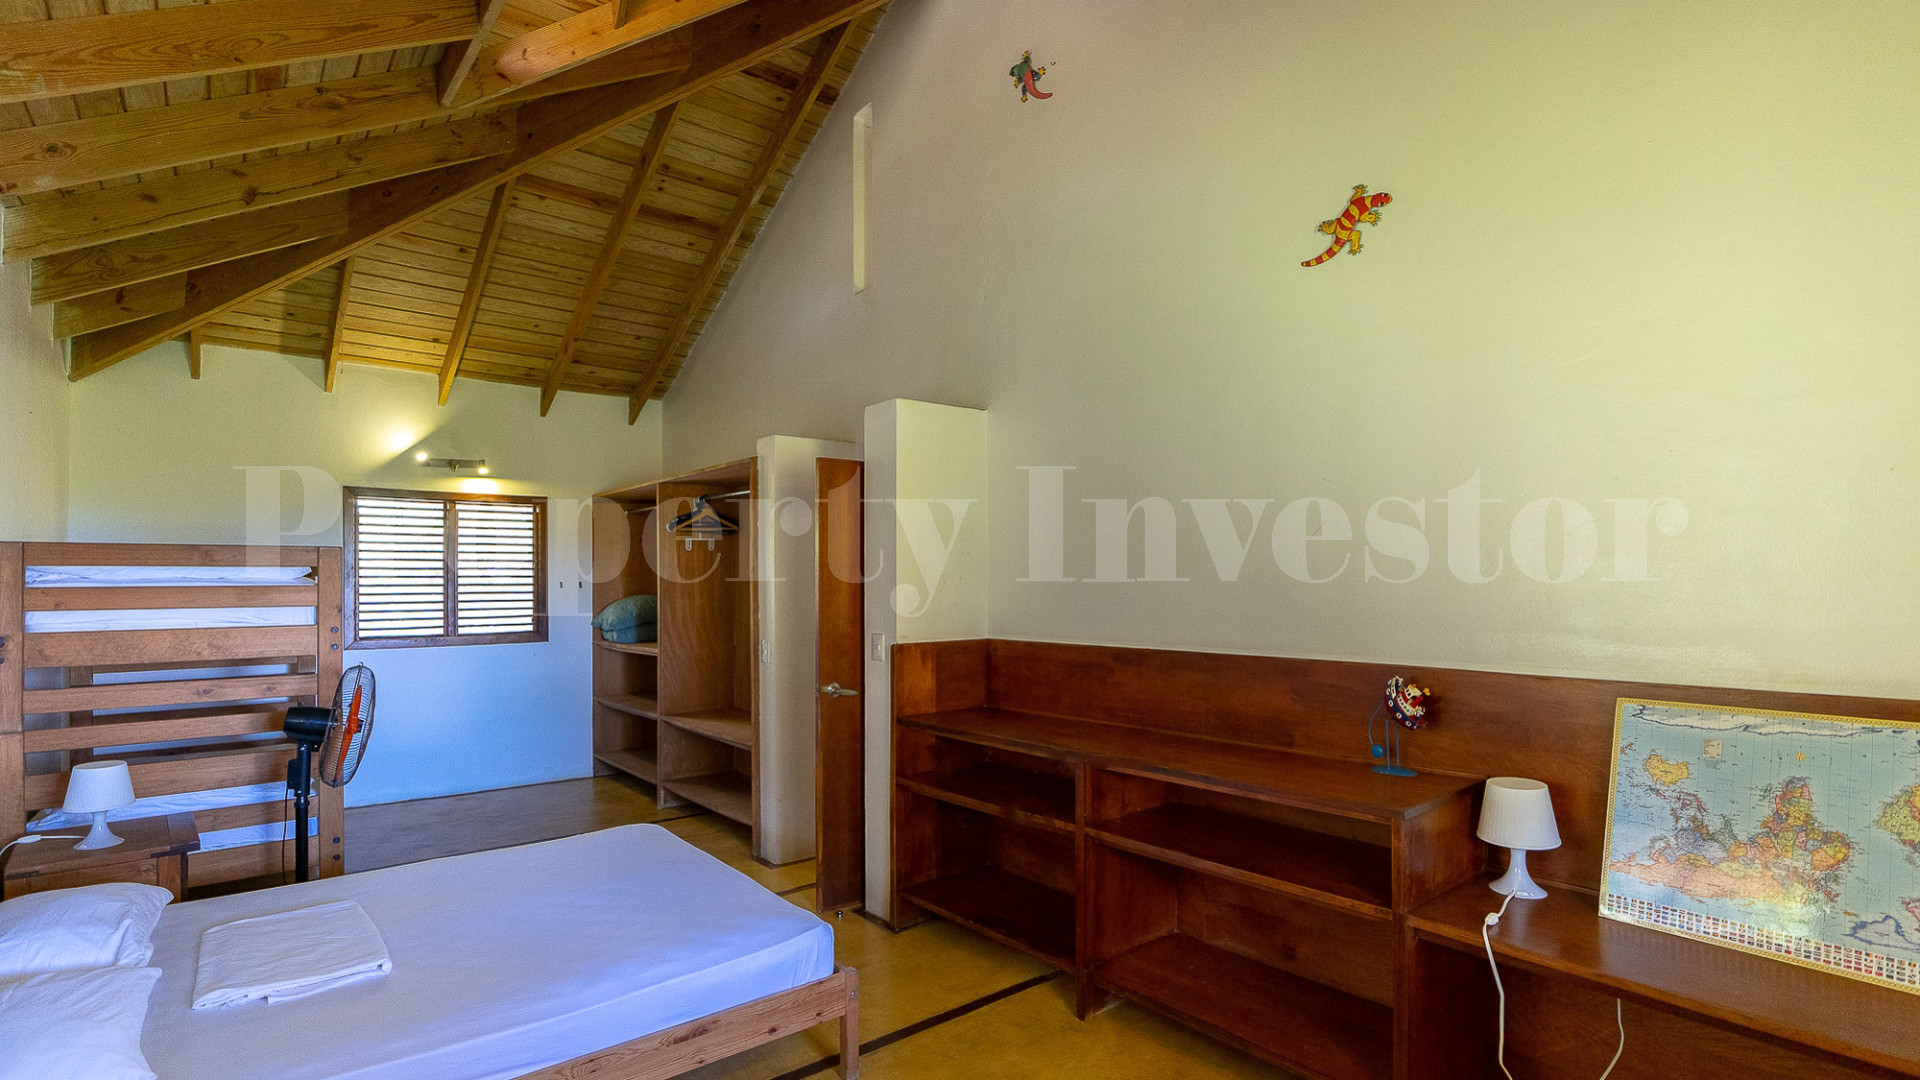 Handcrafted 5 Bedroom Eco Retreat with Incredible Ocean Views & Tropical Gardens for Sale Near Las Terrenas, Dominican Republic